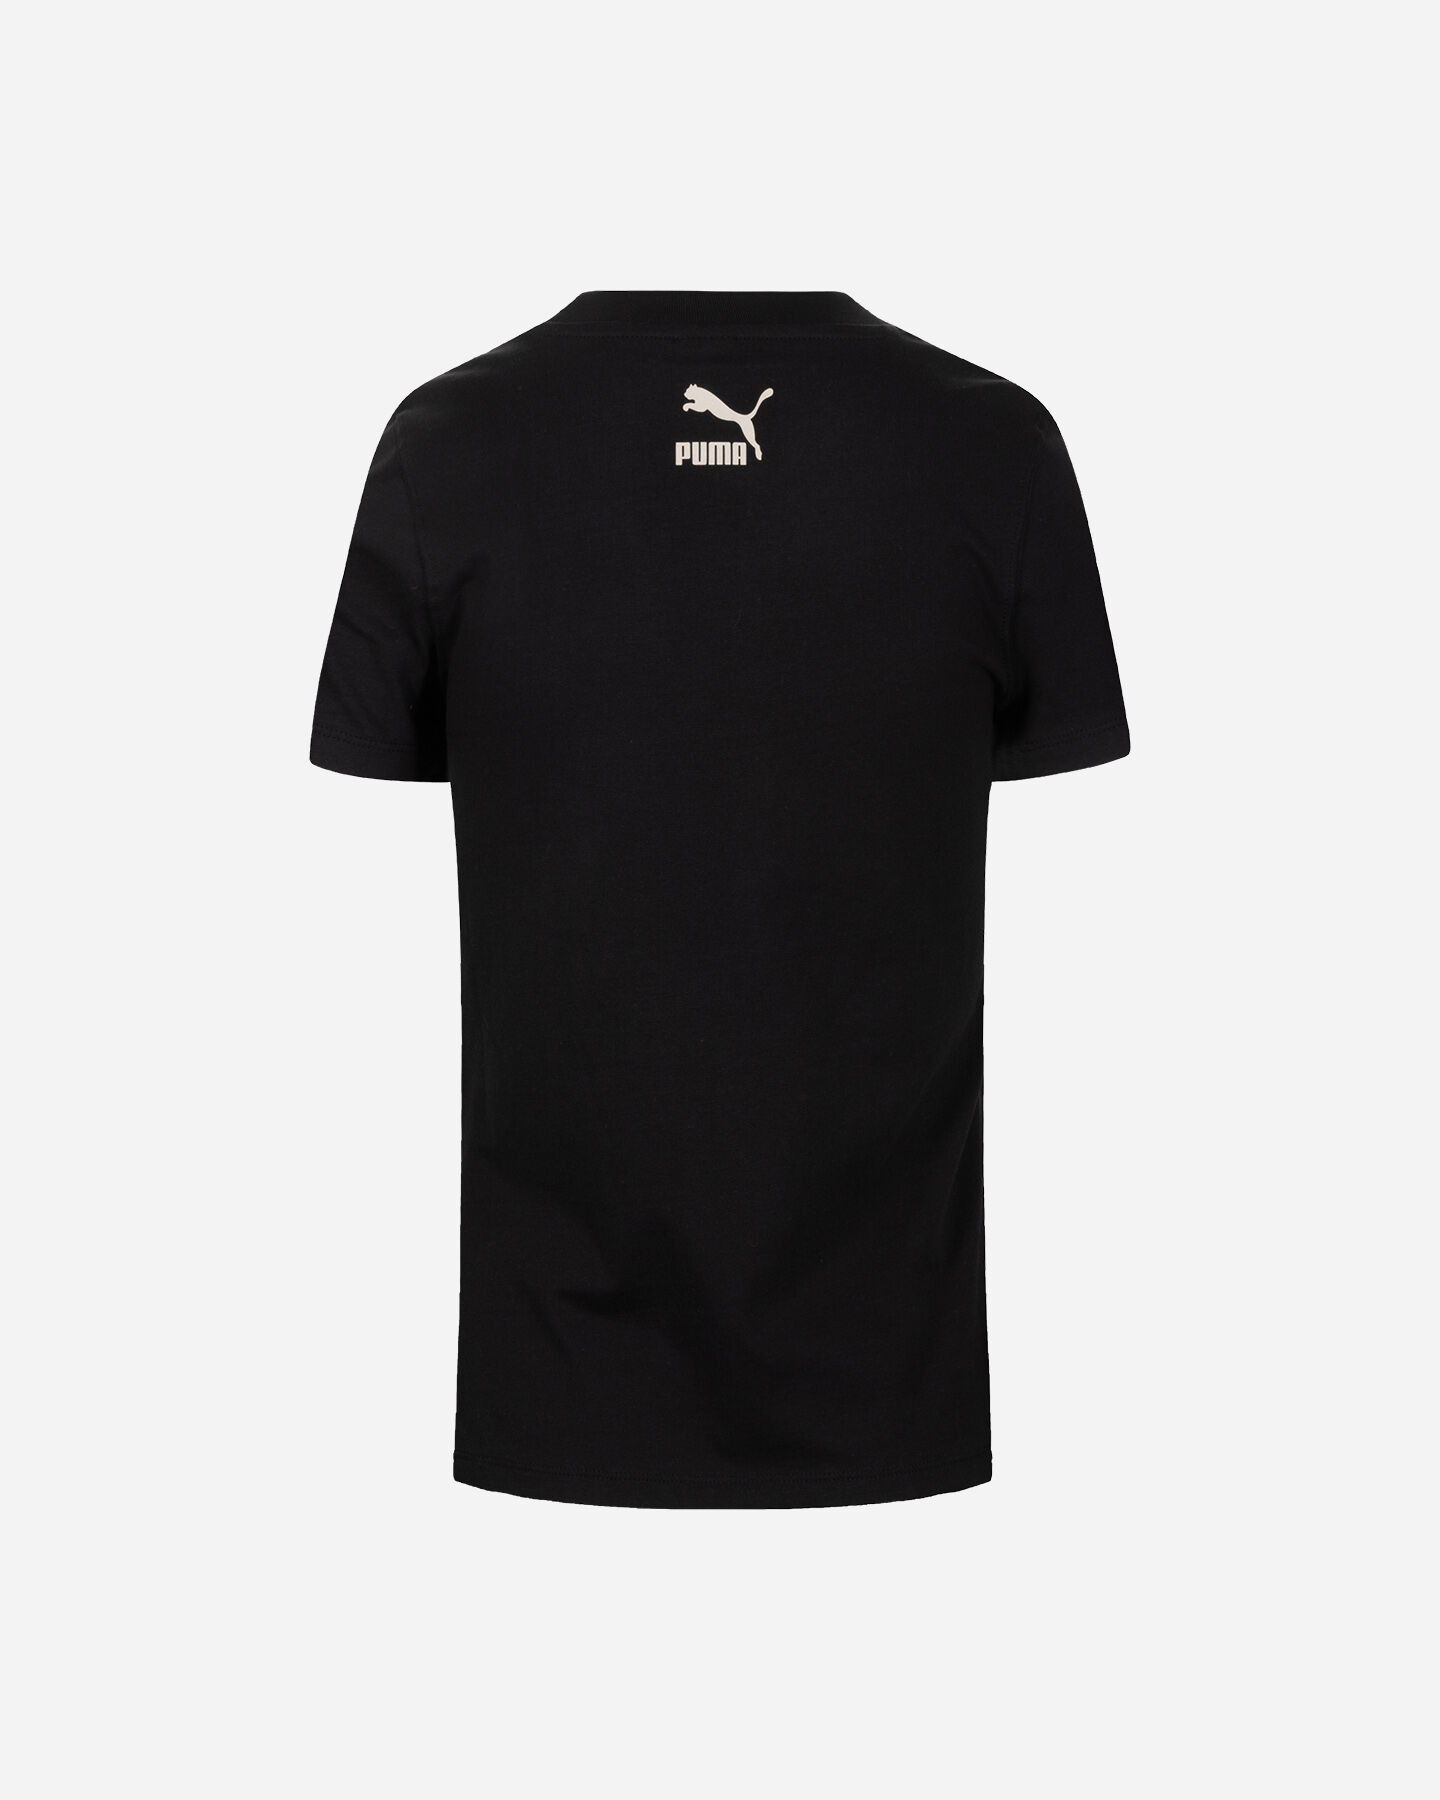  T-Shirt PUMA JERS W S5673850|01|XS scatto 1